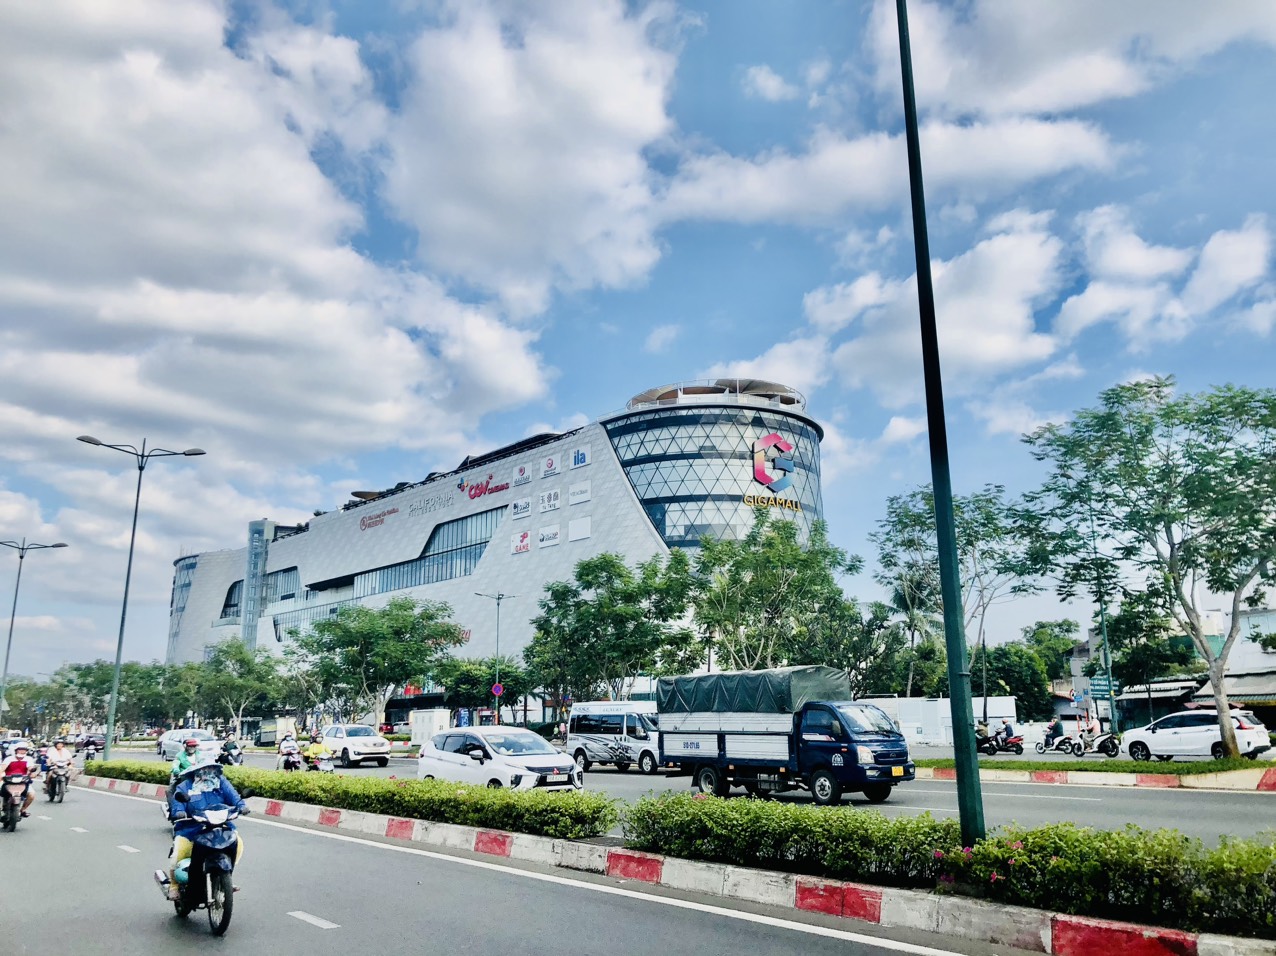 Cần bán nhà MT Đường 20 đối diện Mega Mall ngay sát Phạm Văn Đồng  chỉ 18ty5